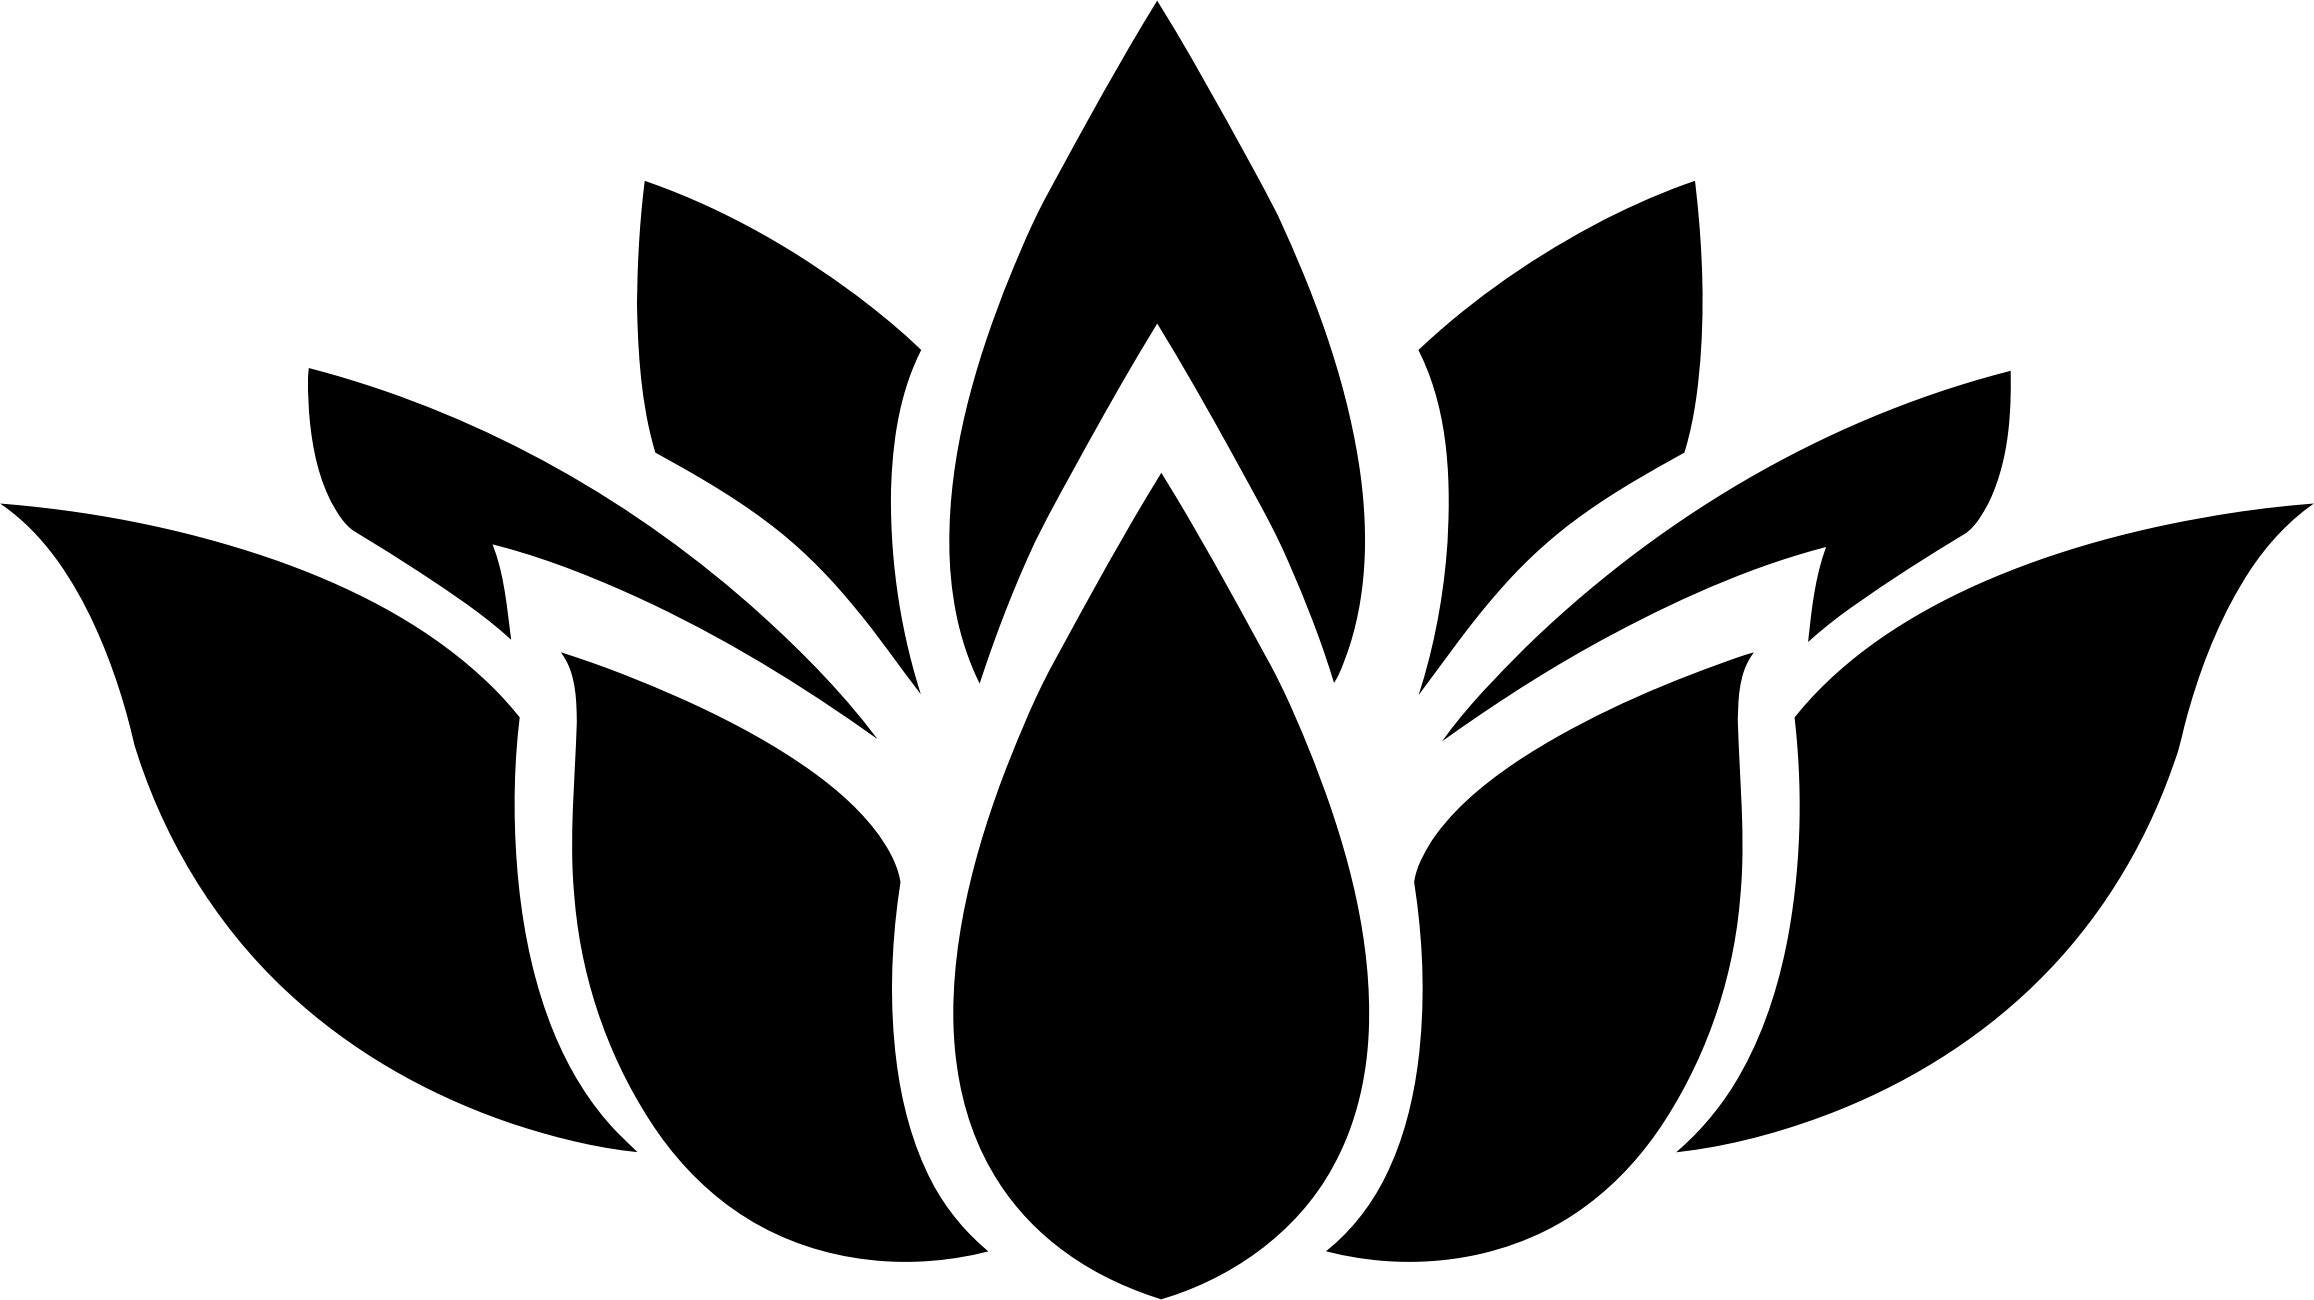 3 Flower Logo - Lotus flower logo png 3 PNG Image